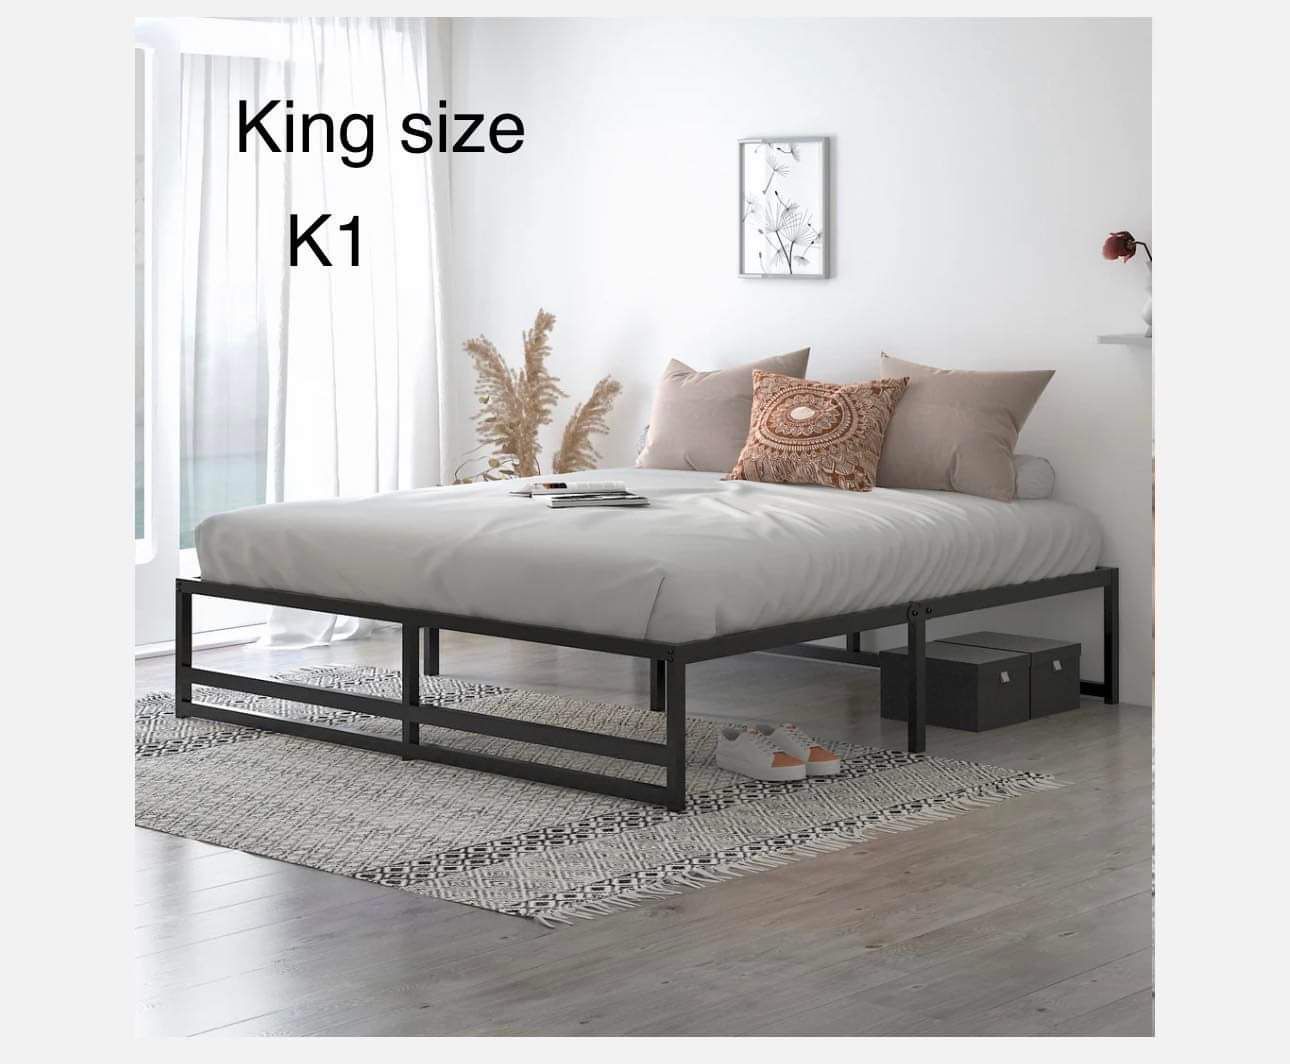 K1-King size Metal Platform Bed Frame with 14'' Under Bed Storage